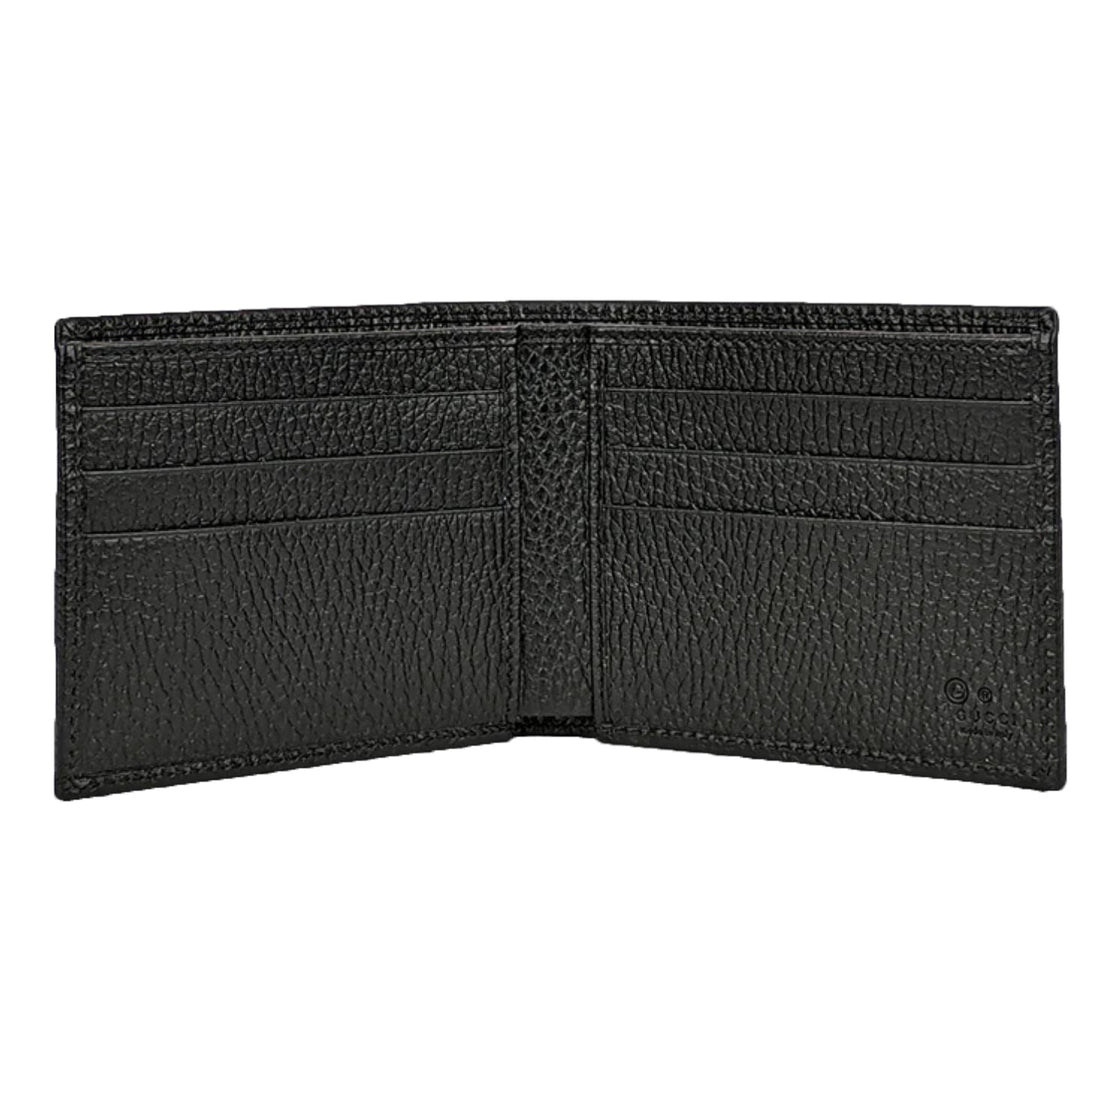 Gucci GG Bi-Fold Wallet